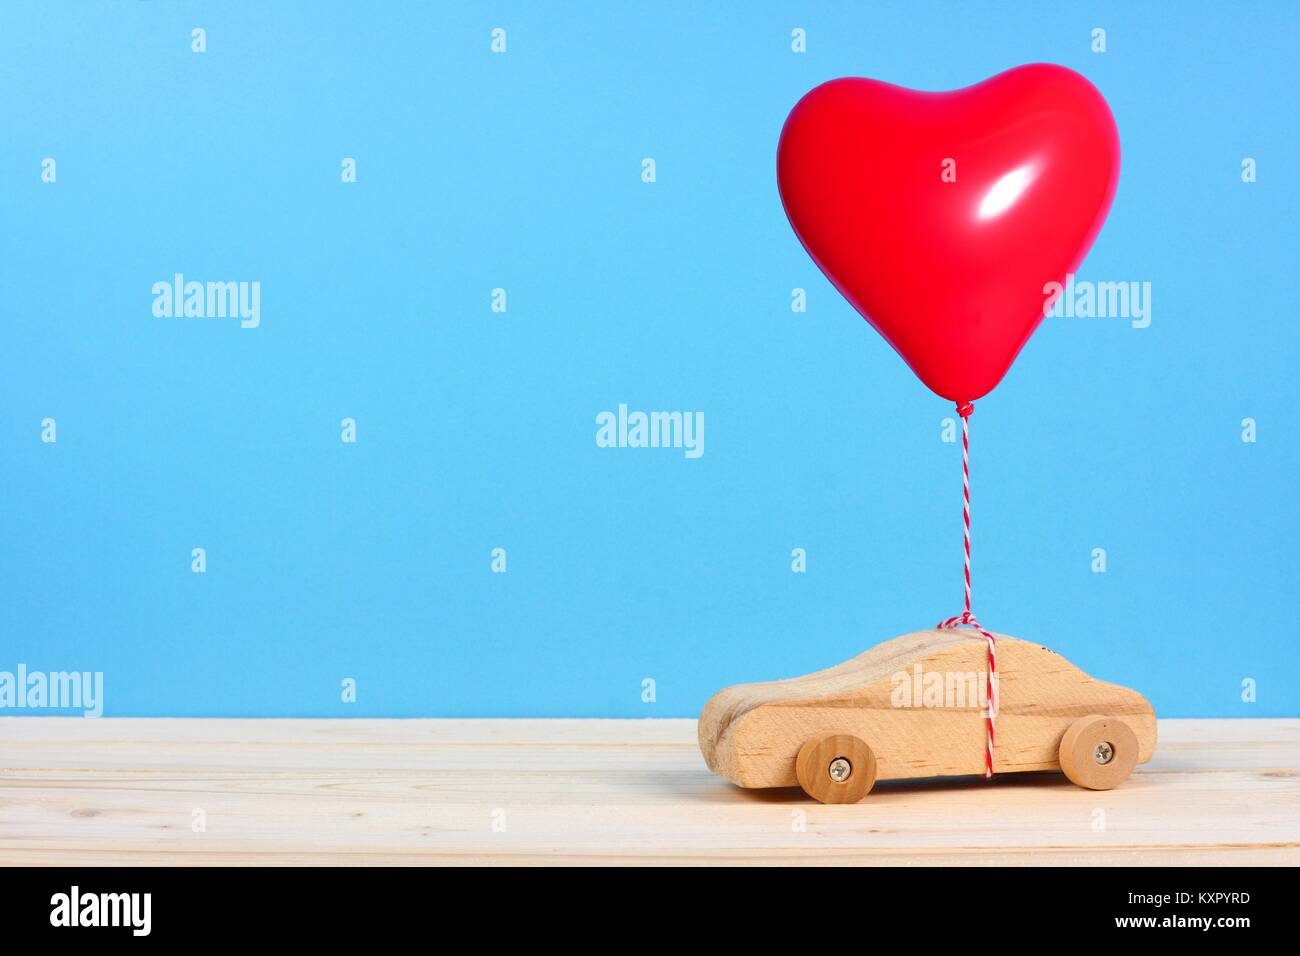 Coche de juguete de madera con un corazón rojo globo contra un fondo azul. Día de San Valentín o concepto de amor. Foto de stock